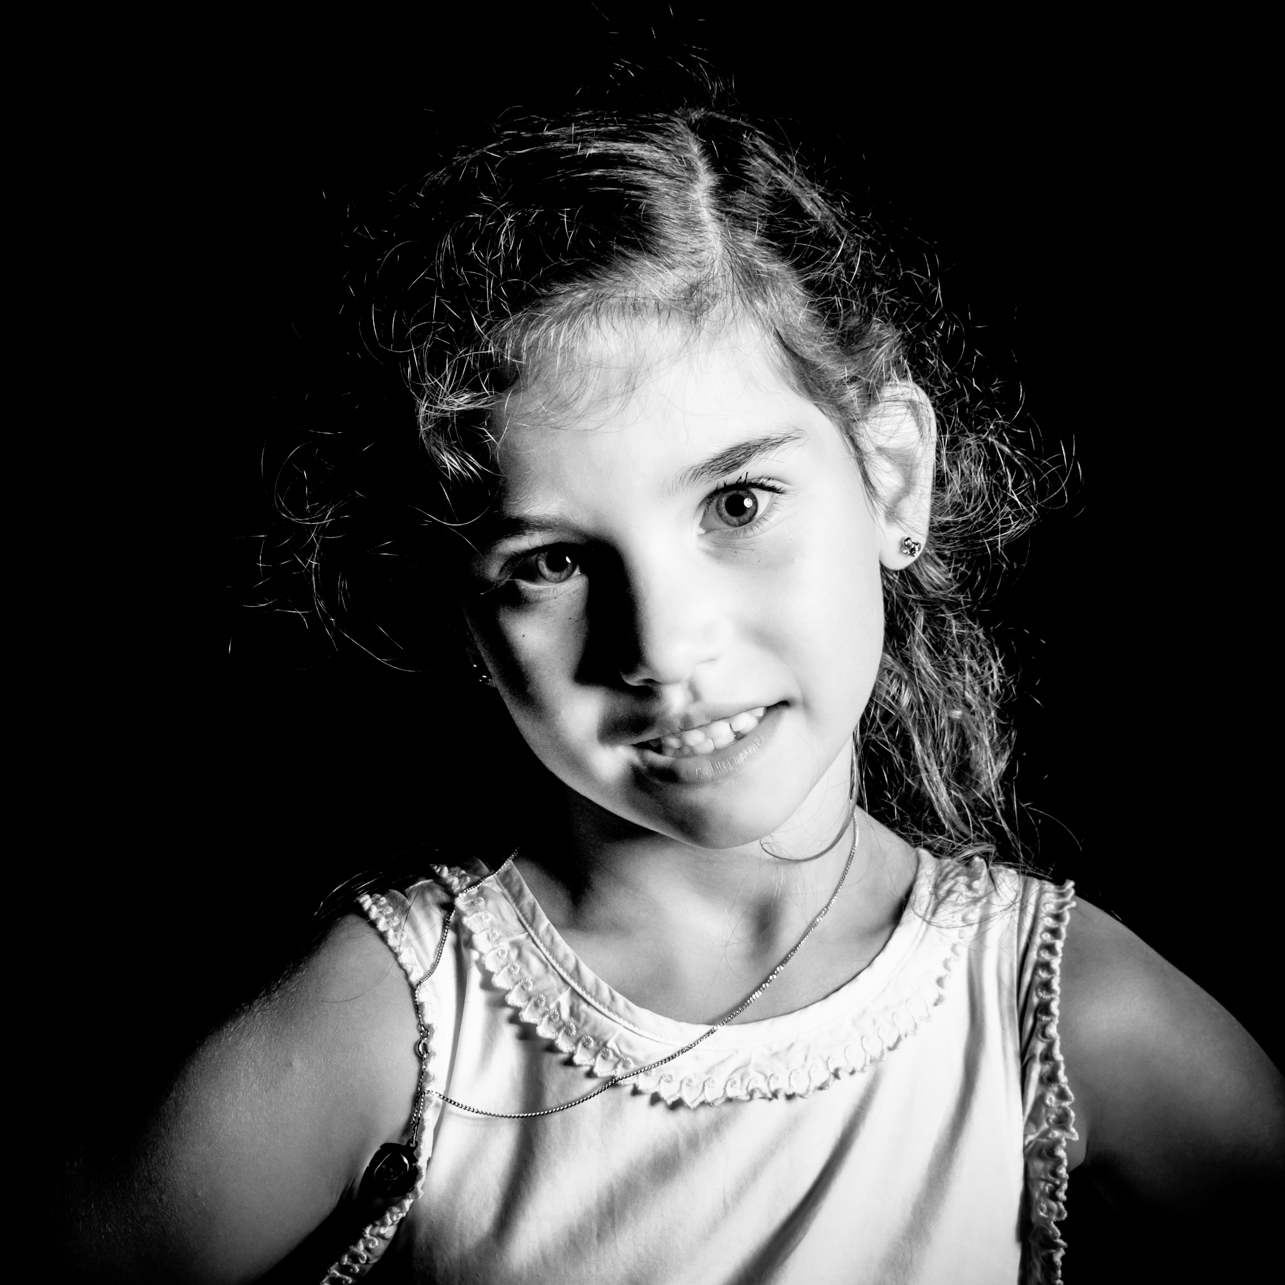 Portrait noir et blanc d'un enfant